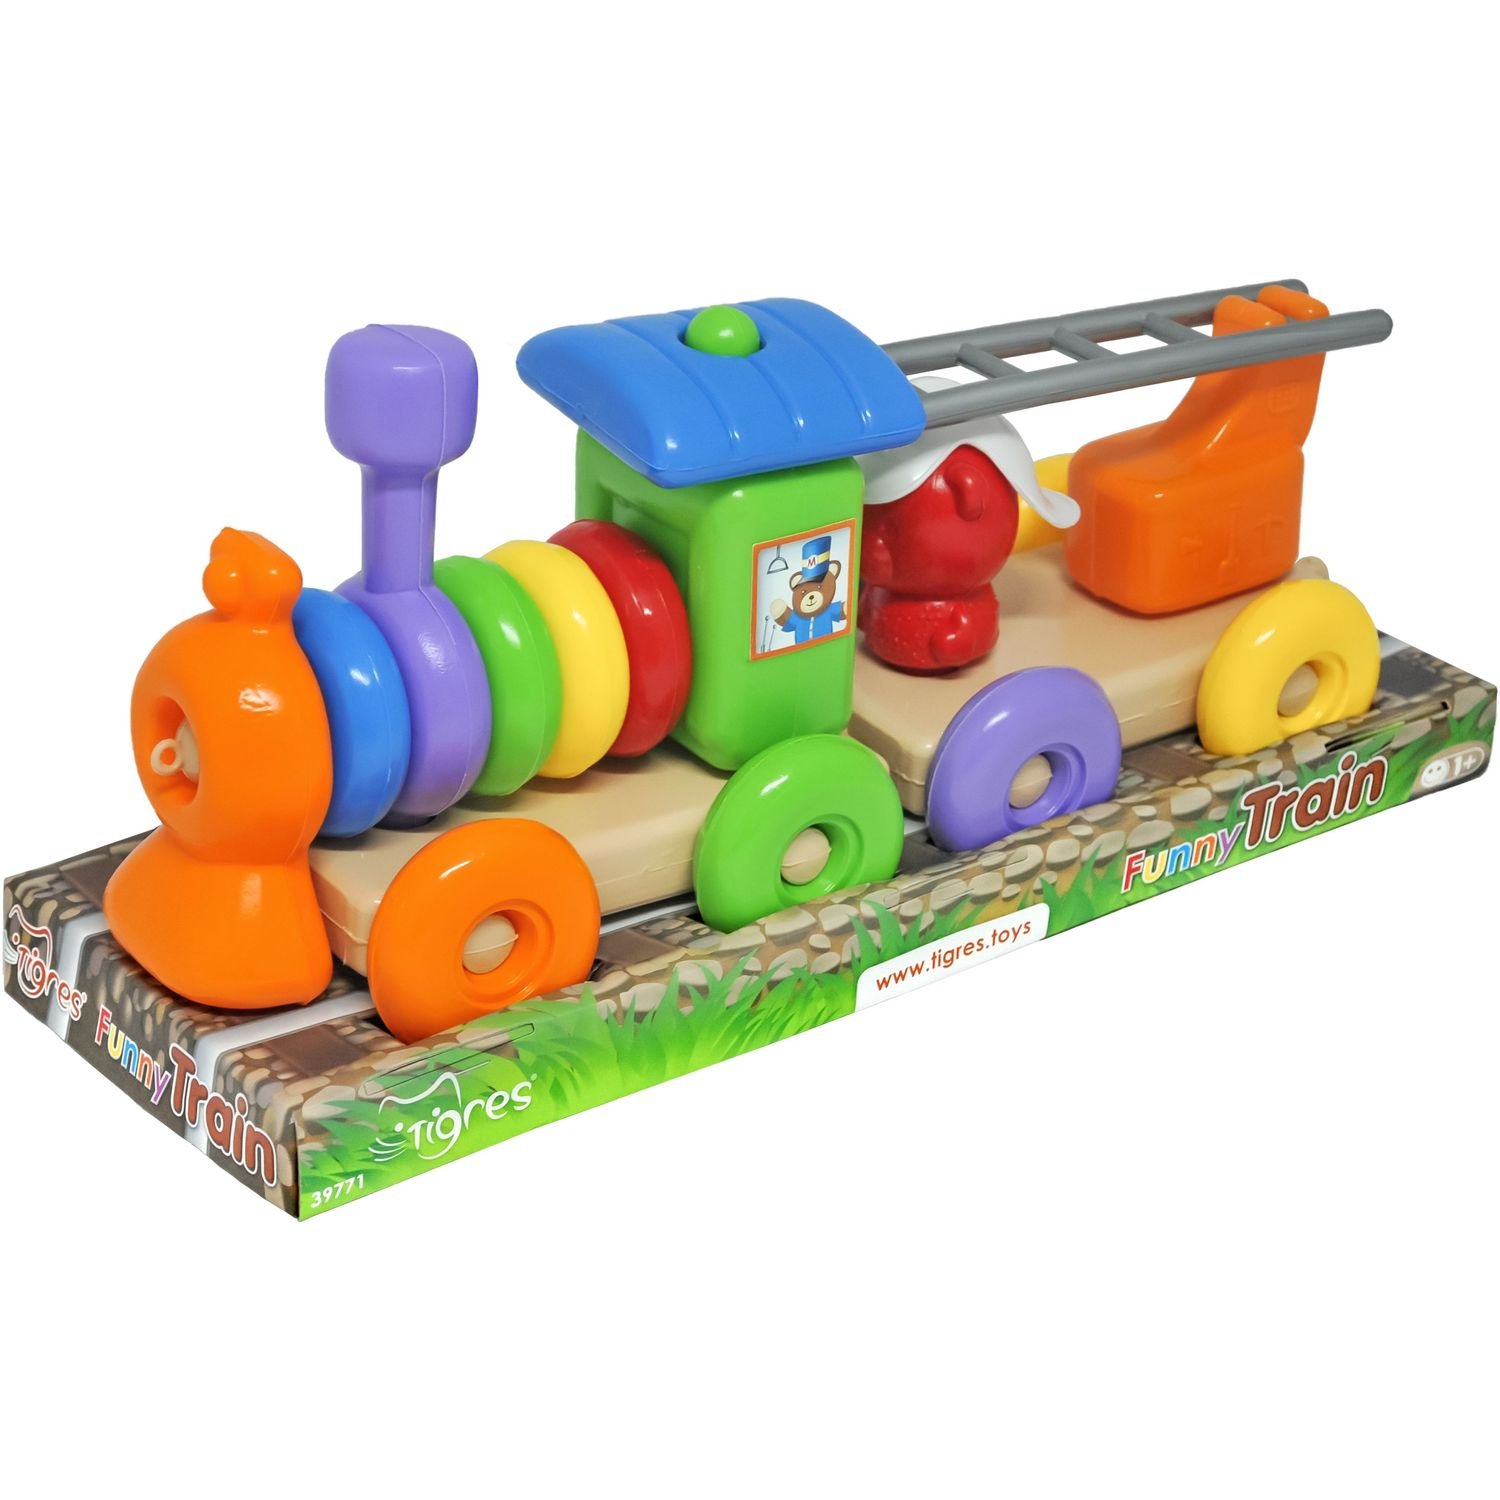 Розвиваюча іграшка Tigres Funny train, 23 елемента (39771) - фото 1